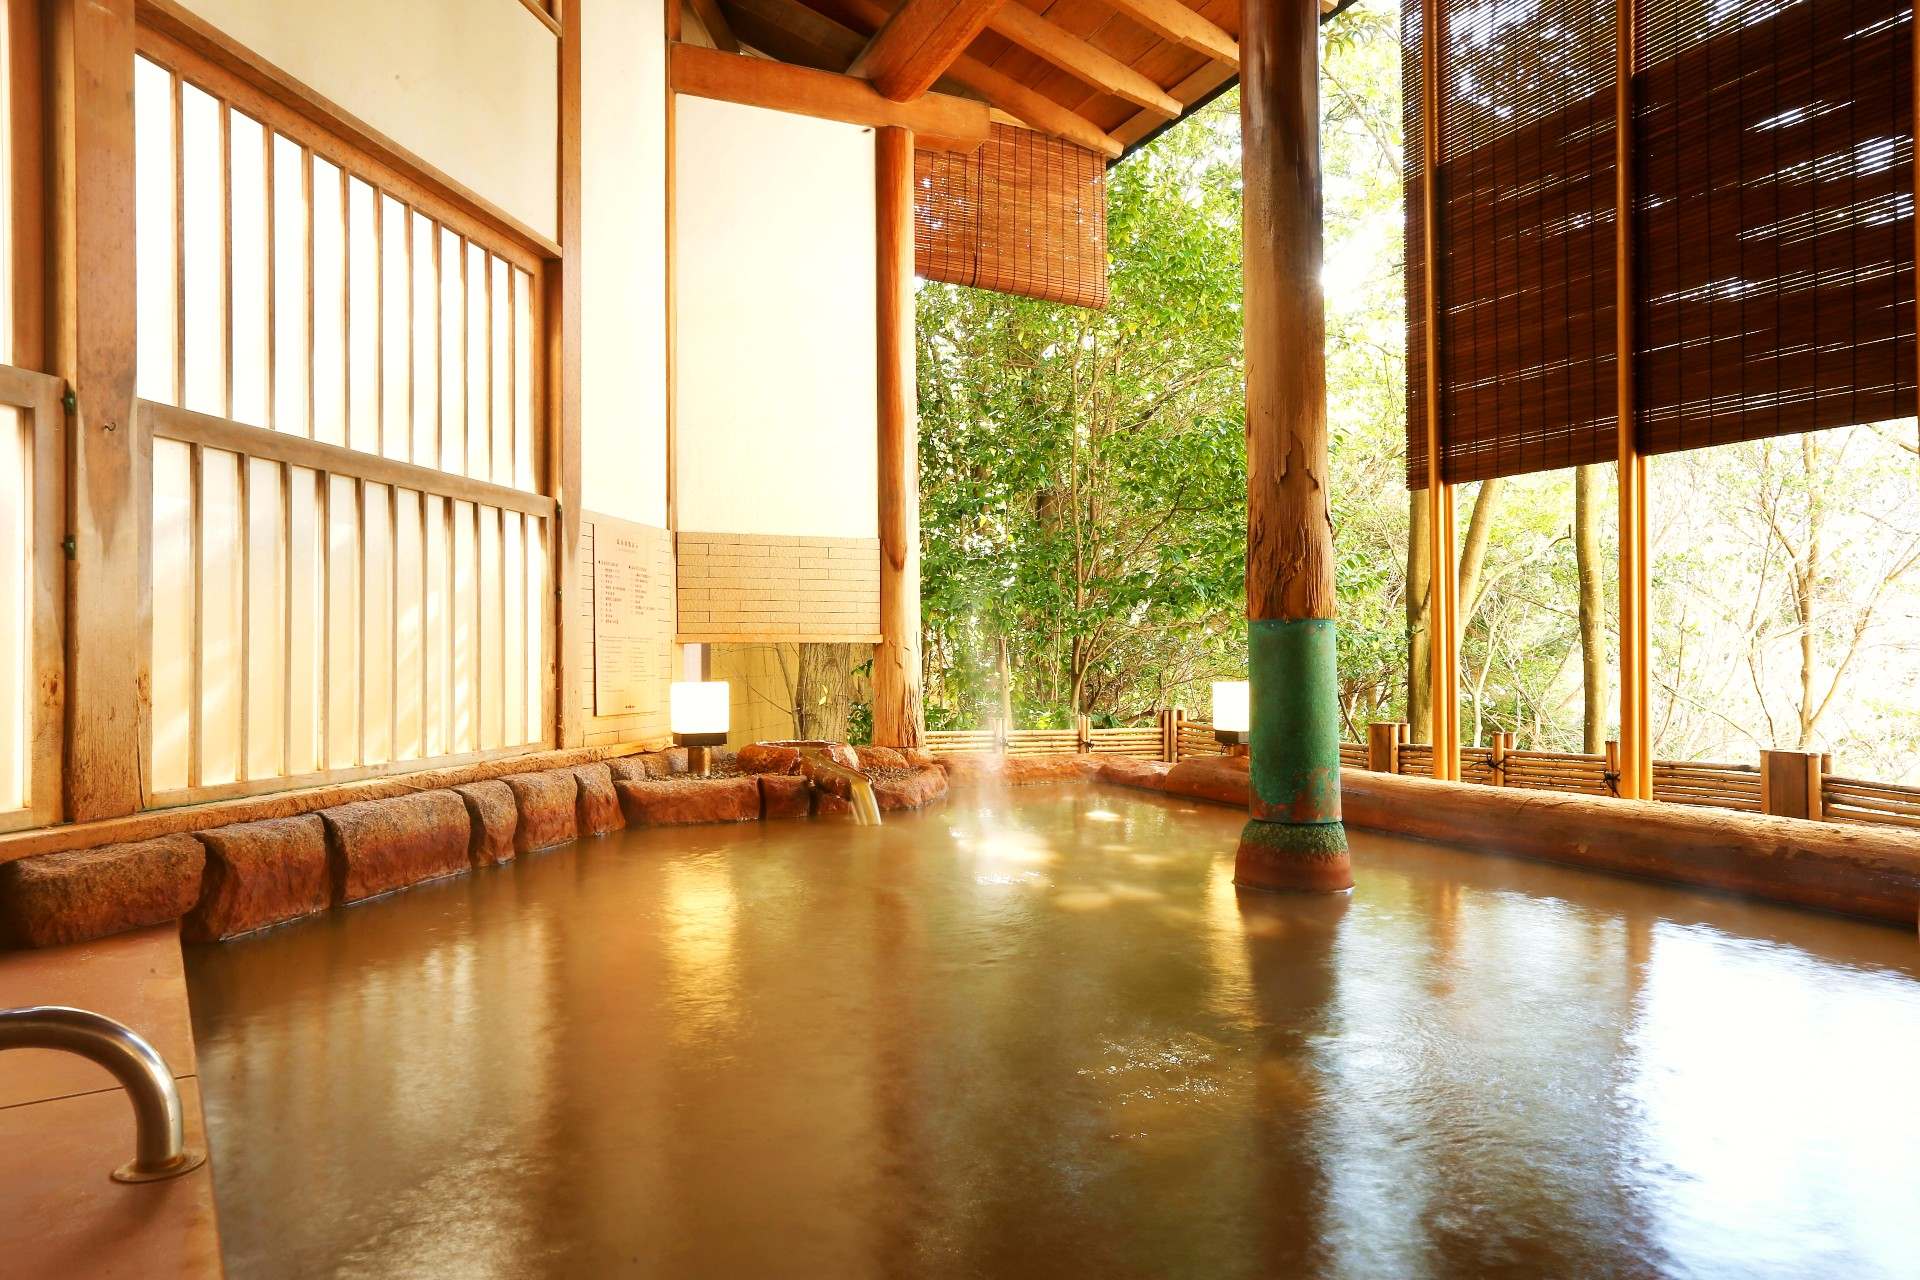 「瑞泉」は露天風呂があり、四季折々の表情を見せる庭園を眺めることができます。